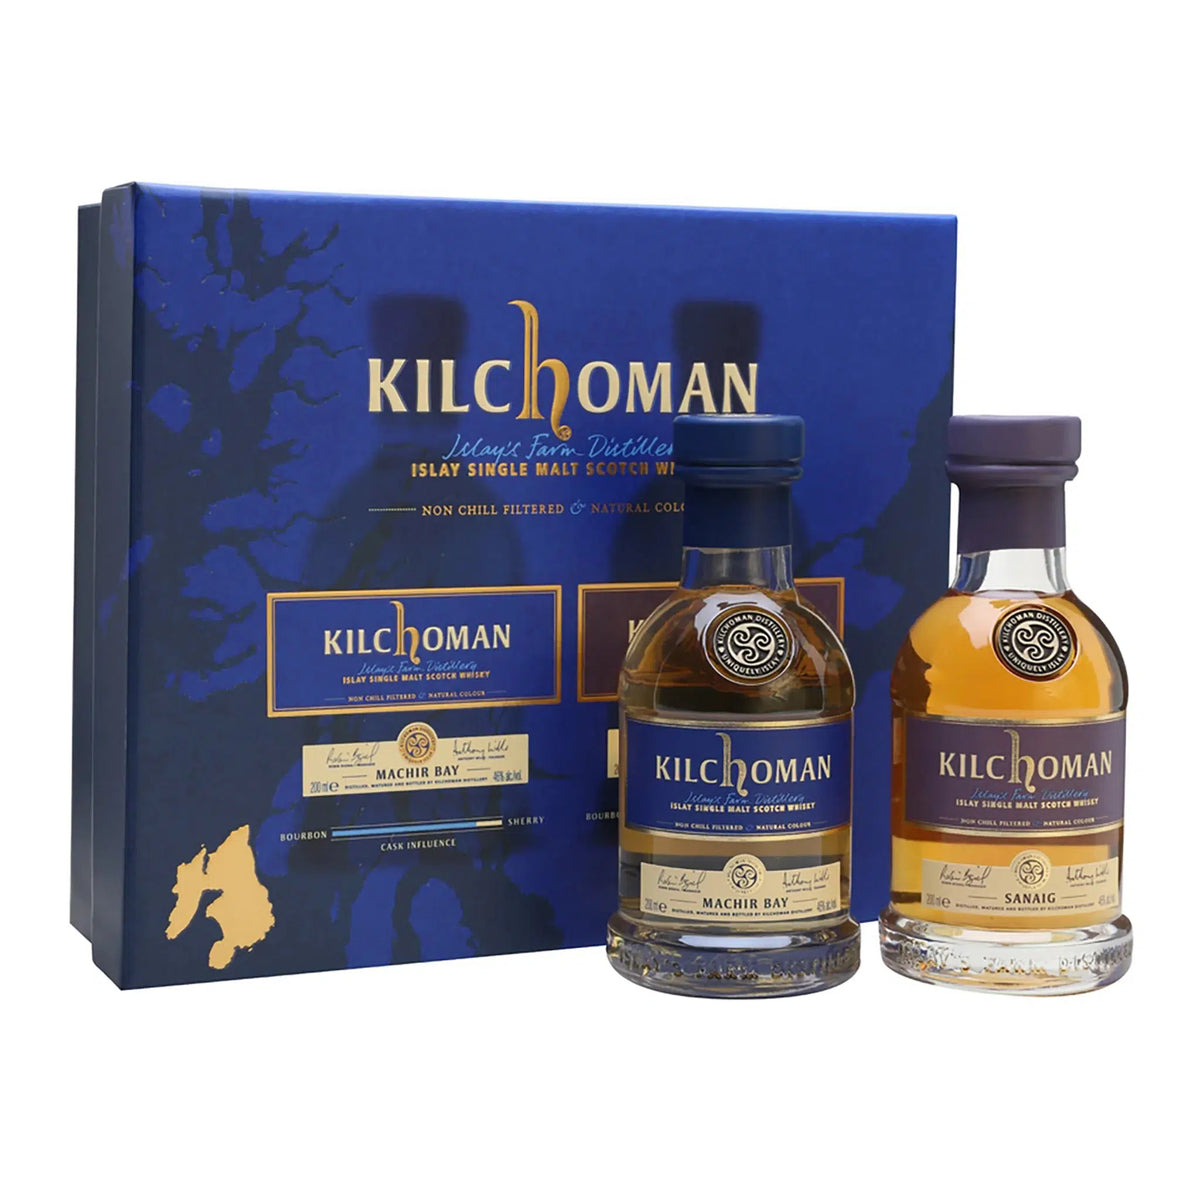 Kilchoman Gift Set Sanaig & Machir Bay Single Malt Scotch Whisky (2 x 200ml)